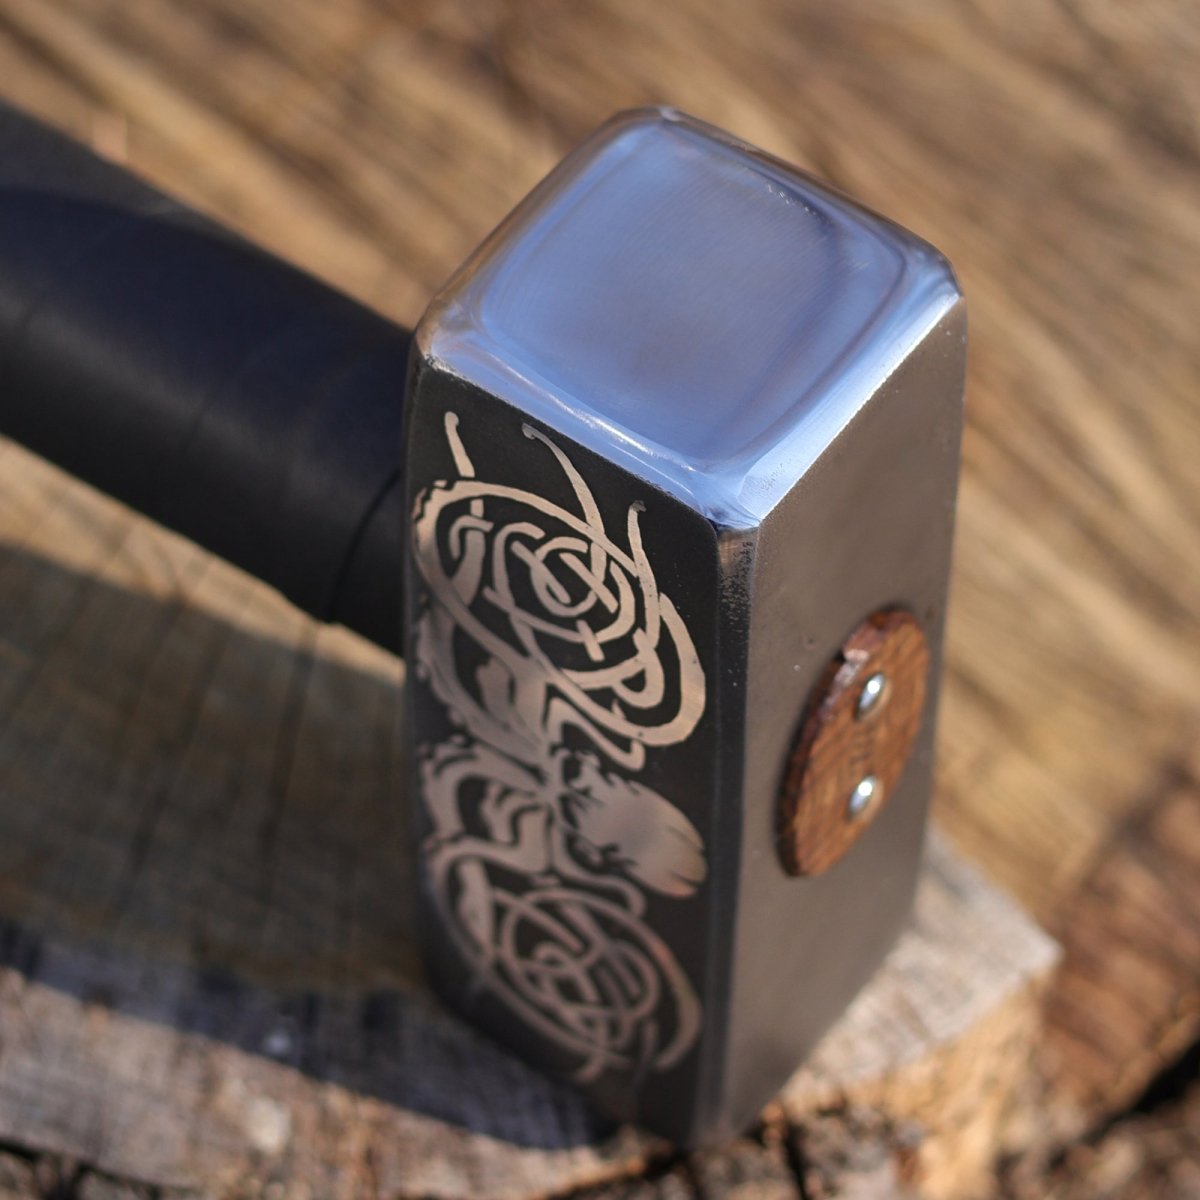 Handmade viking hammer "Kraken" 4.18lb from AncientSmithy